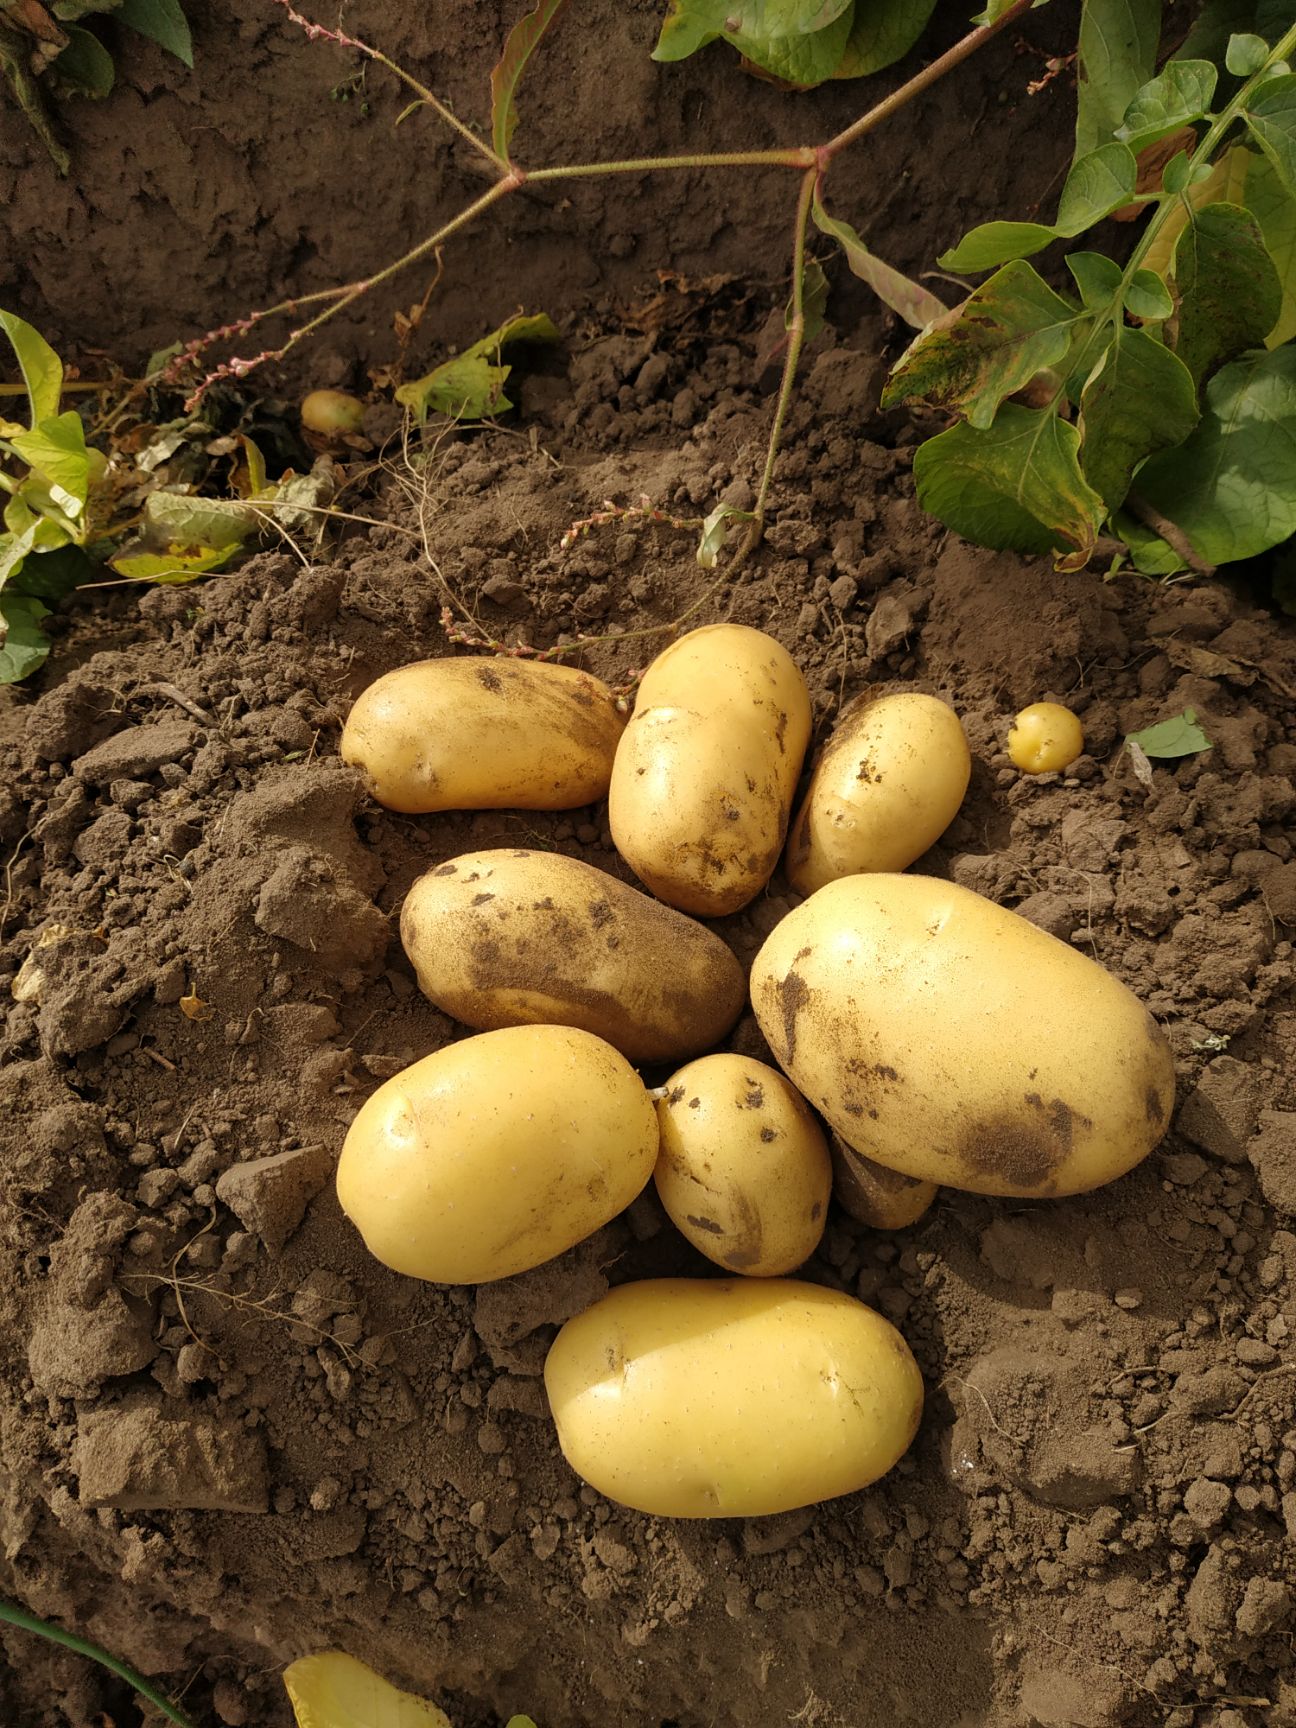 土豆黄金薯 气候冷凉生产,果皮金黄,果肉金黄,种性好,产量高,商品性上